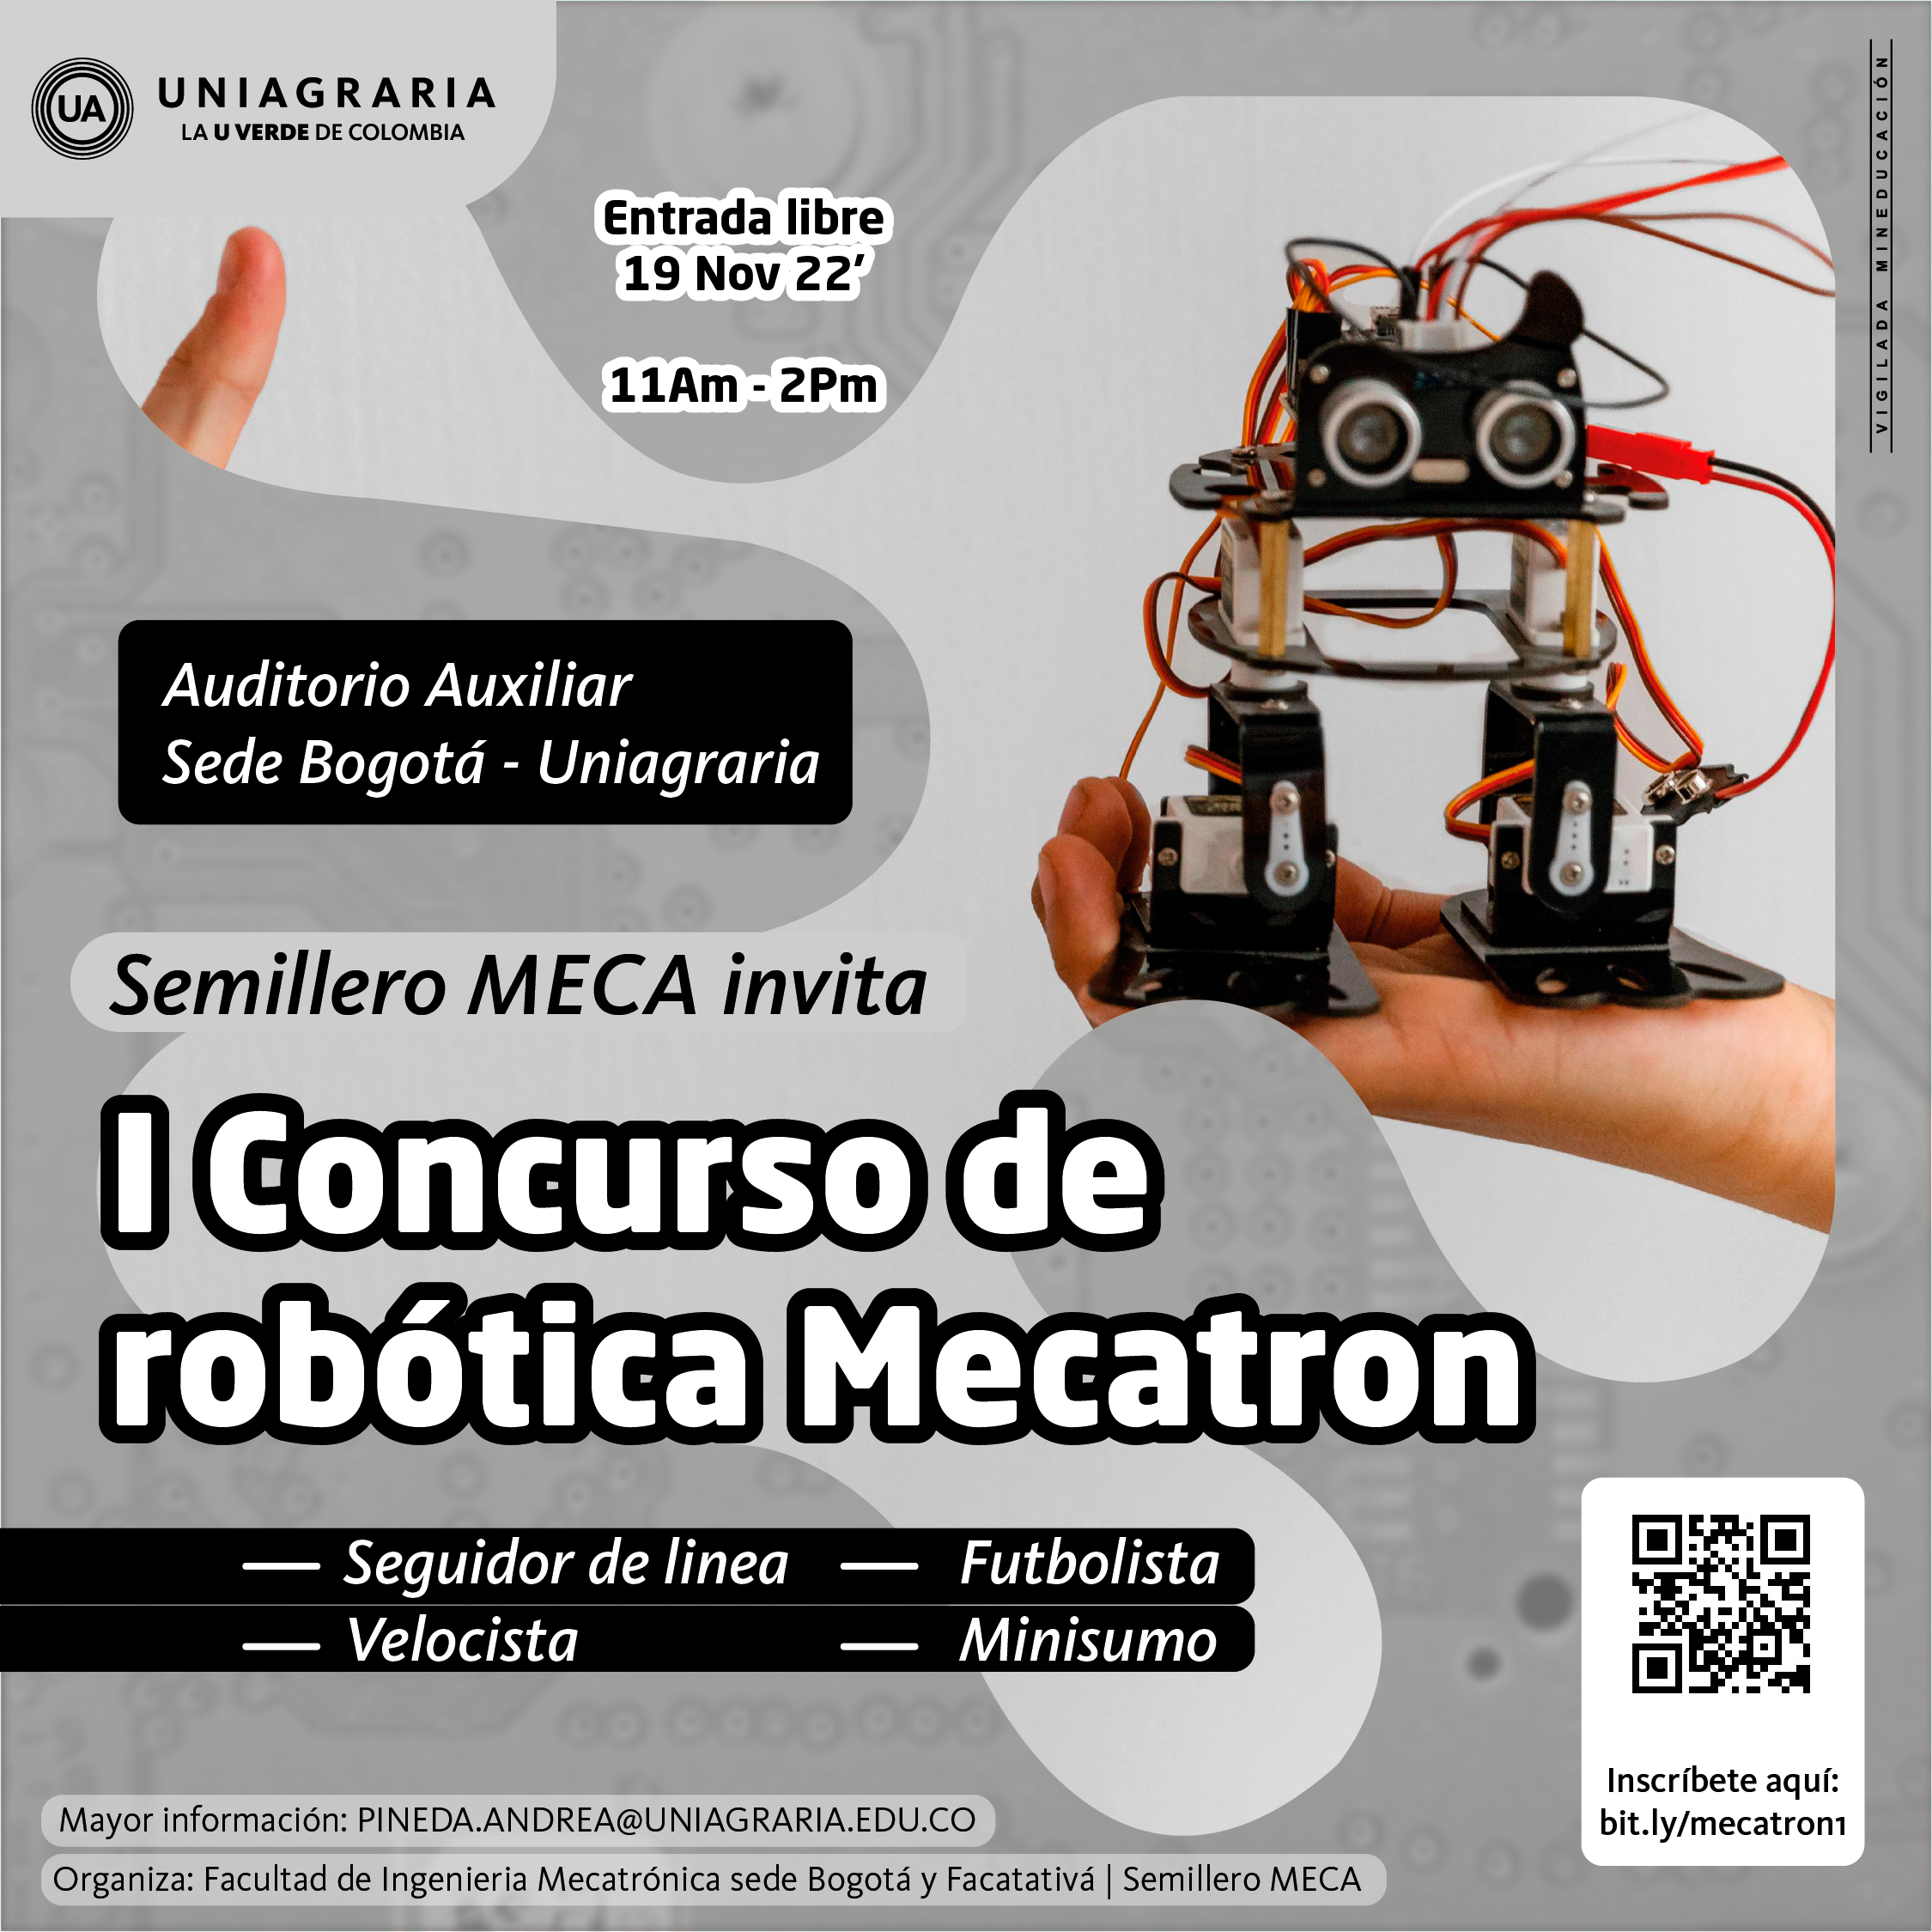 i concurso de robótica Mecatron